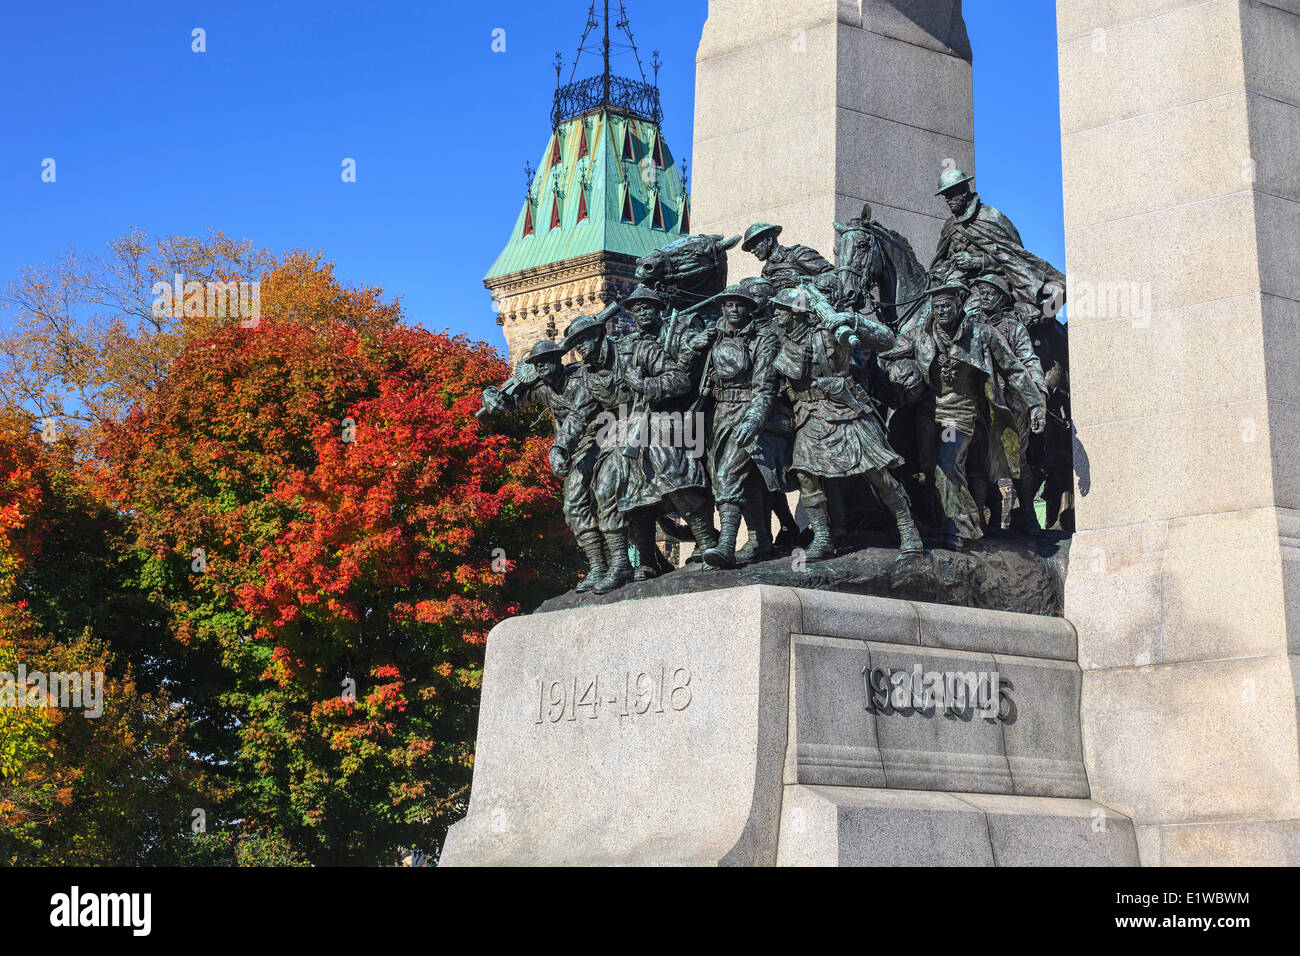 Monument commémoratif de guerre du Canada, Ottawa, Ontario, Canada Banque D'Images